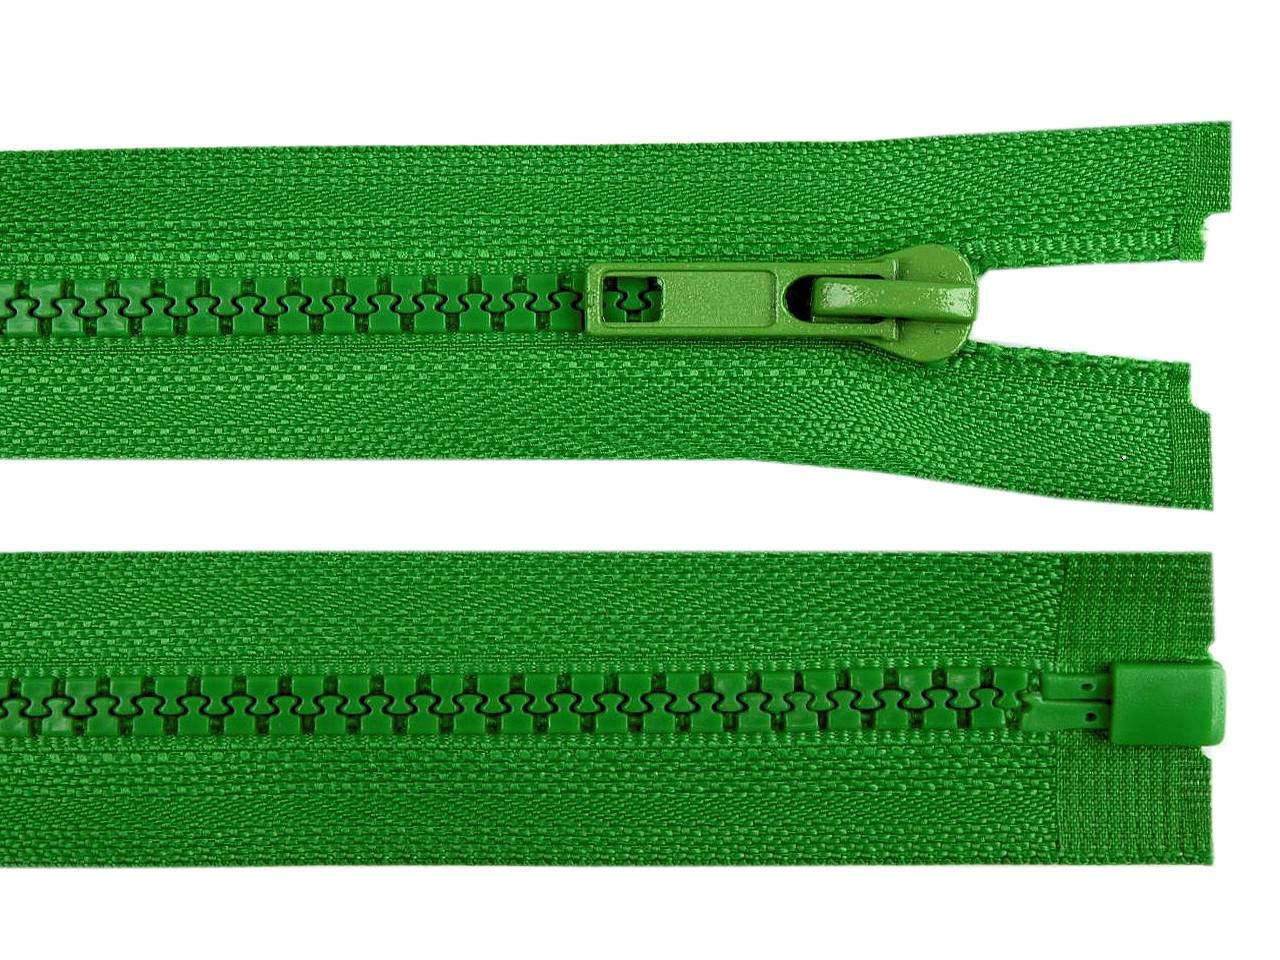 Kostěný zip šíře 5 mm délka 75 cm bundový, barva 239 zelená irská